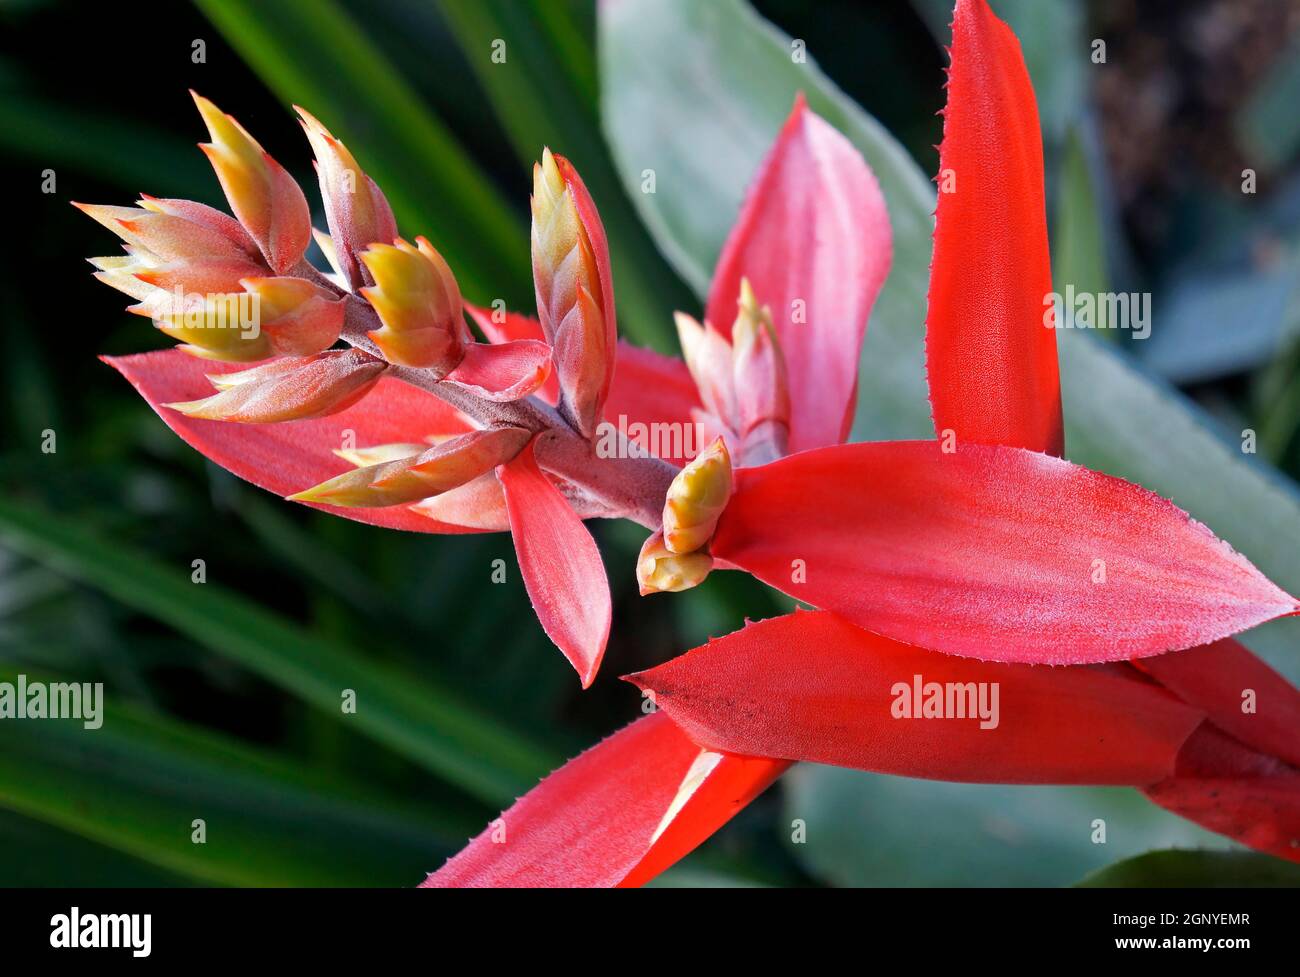 Bromeliad flower (Aechmea tillandsioides) on tropical garden Stock Photo